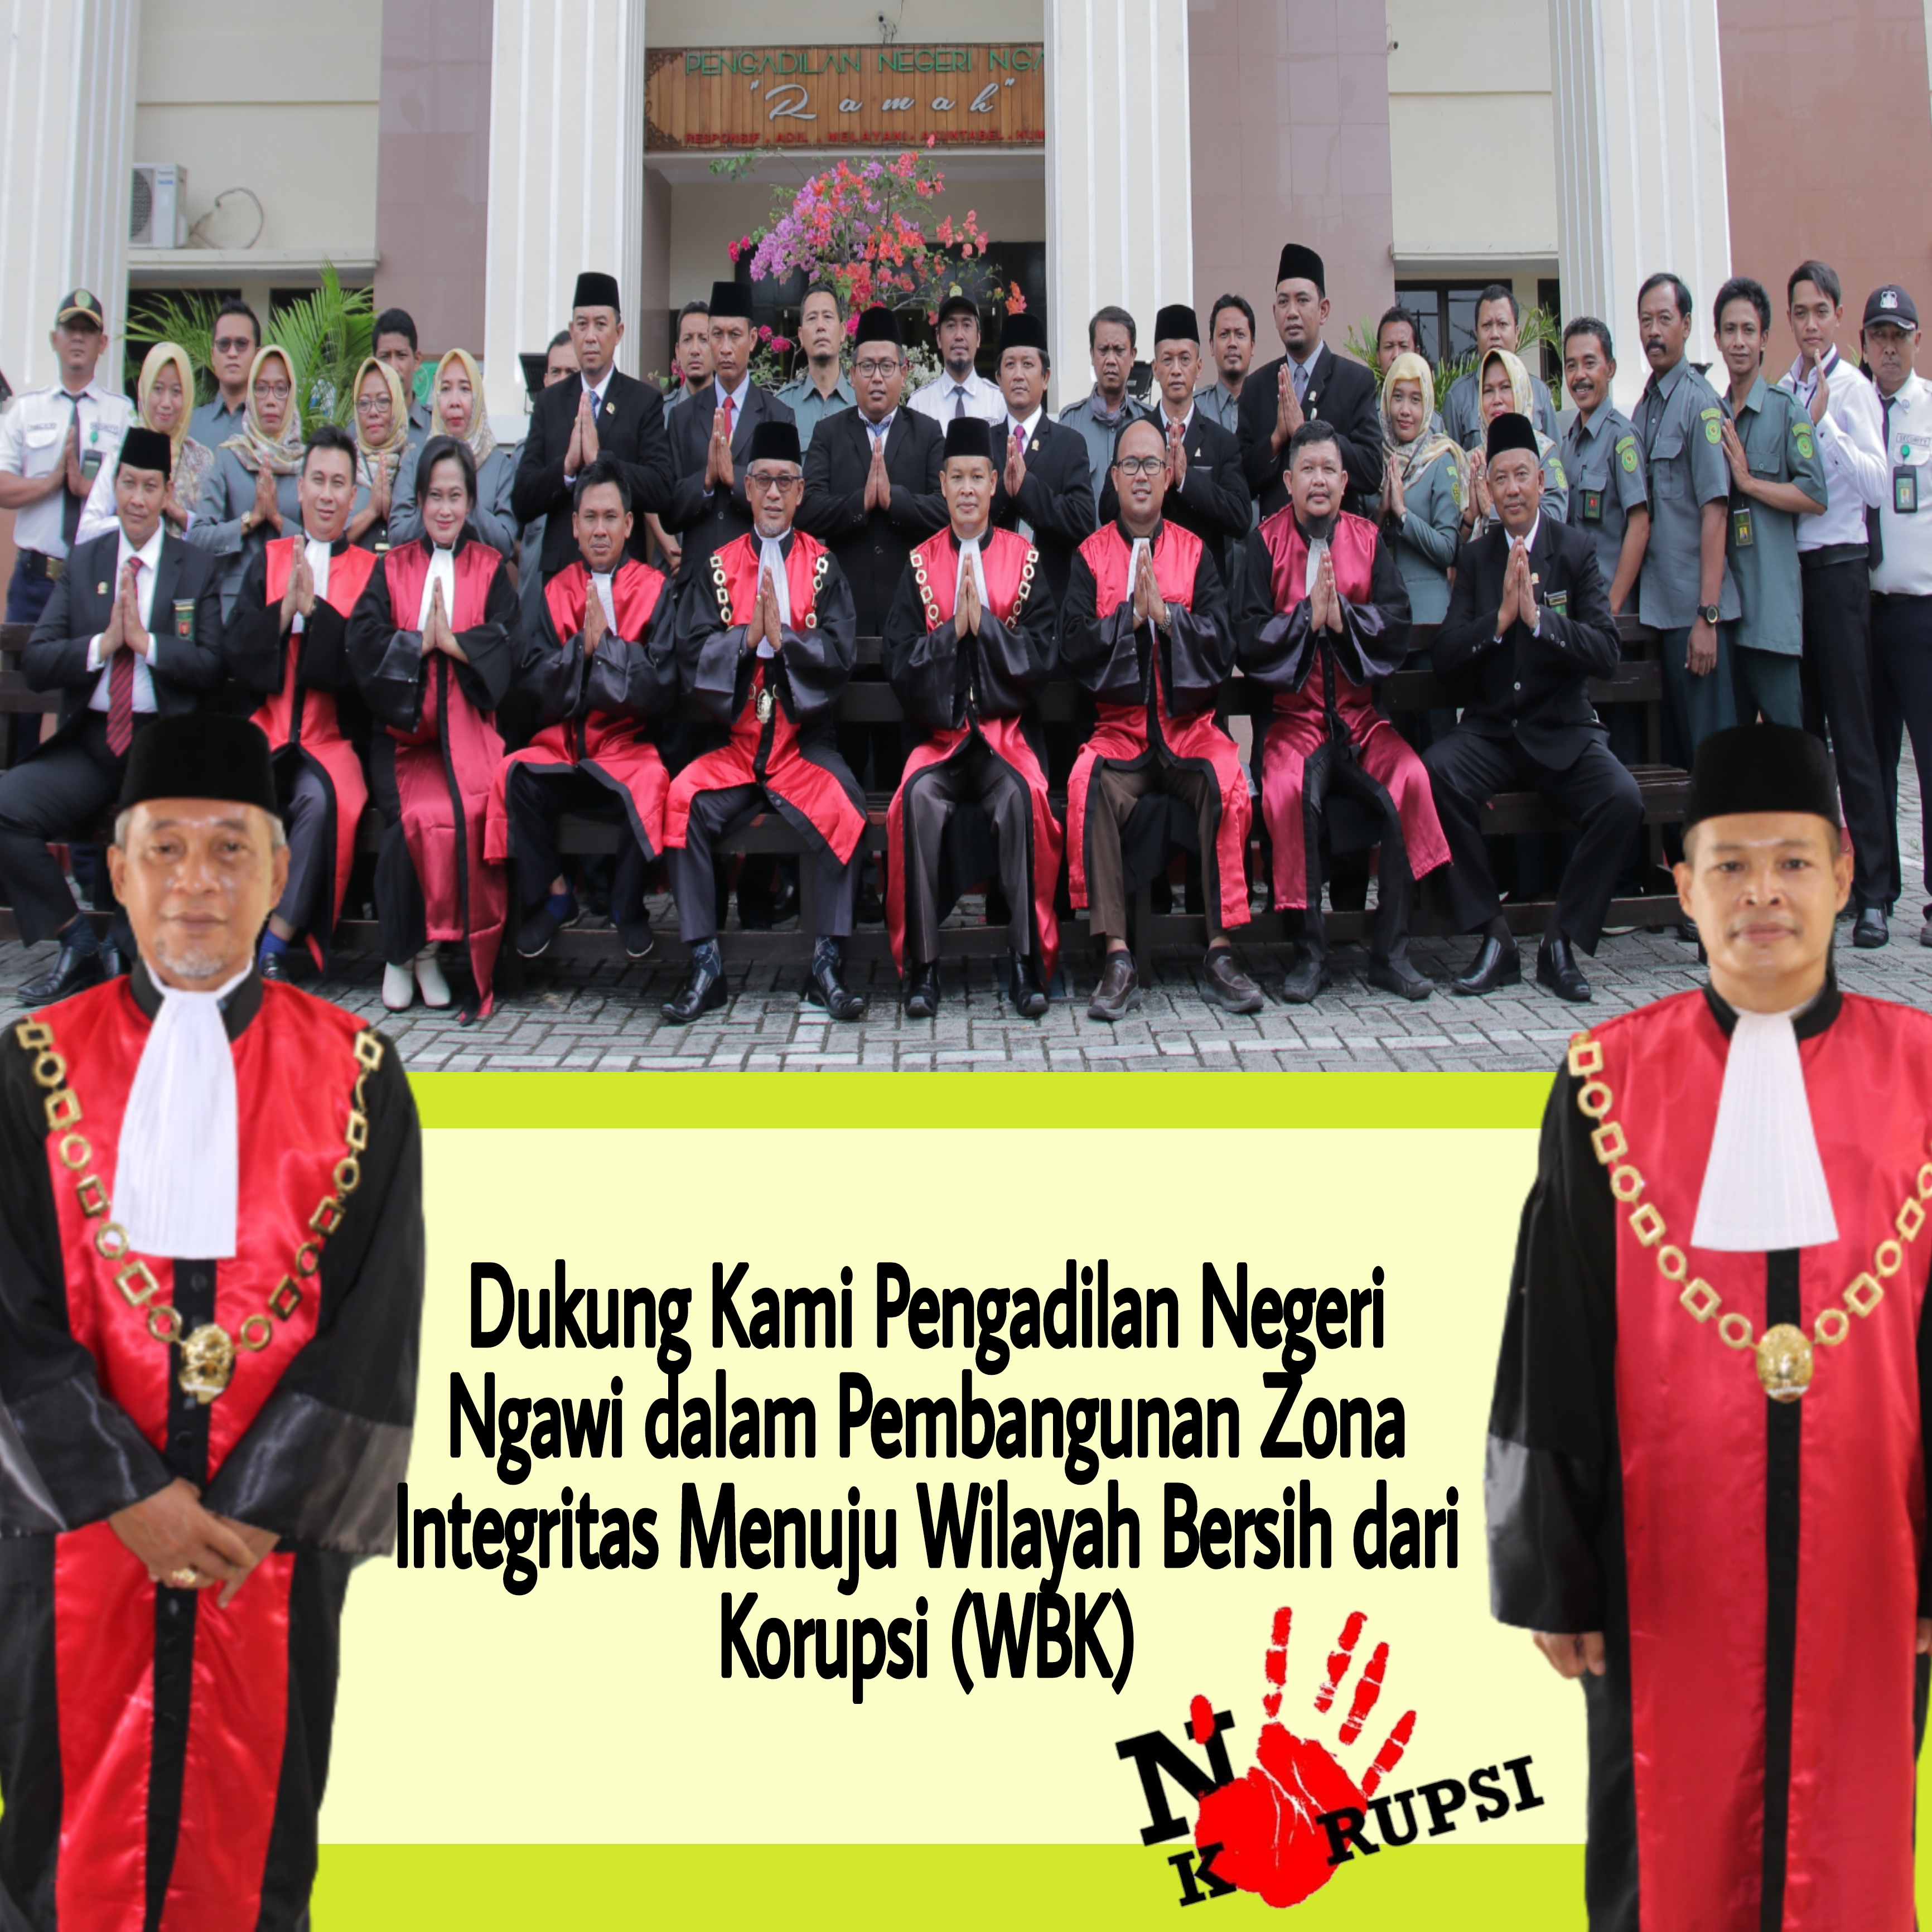 Pembangunan Zona Integritas Pengadilan Negeri Ngawi menuju Wilayah Bersih dari Korupsi (WBK)